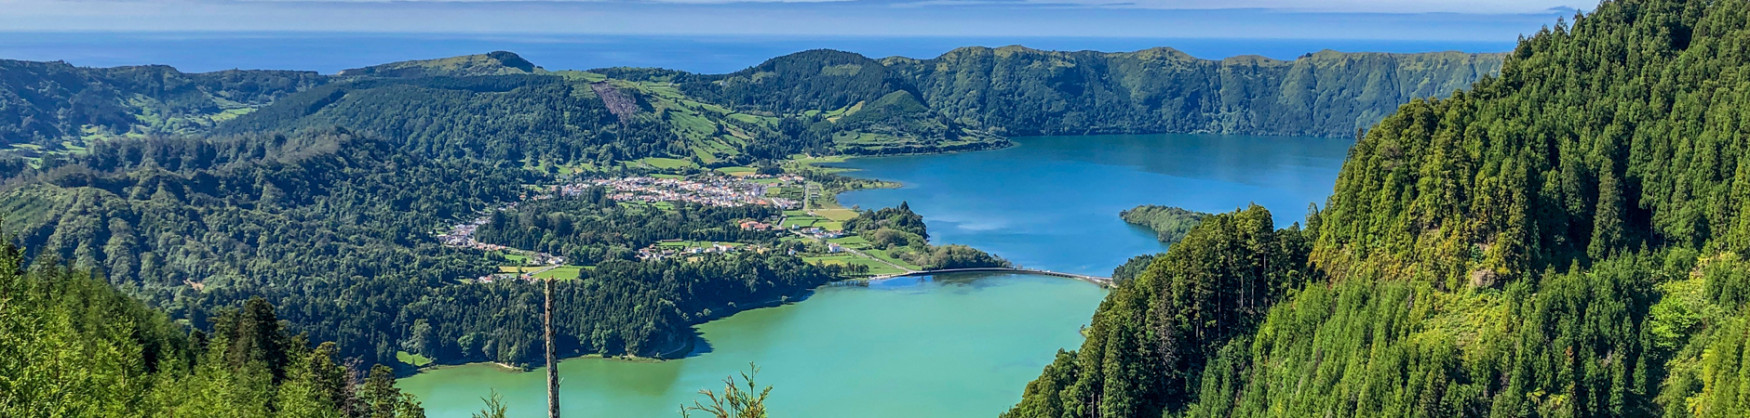 Alojamentos em Sete Cidades São Miguel Açores